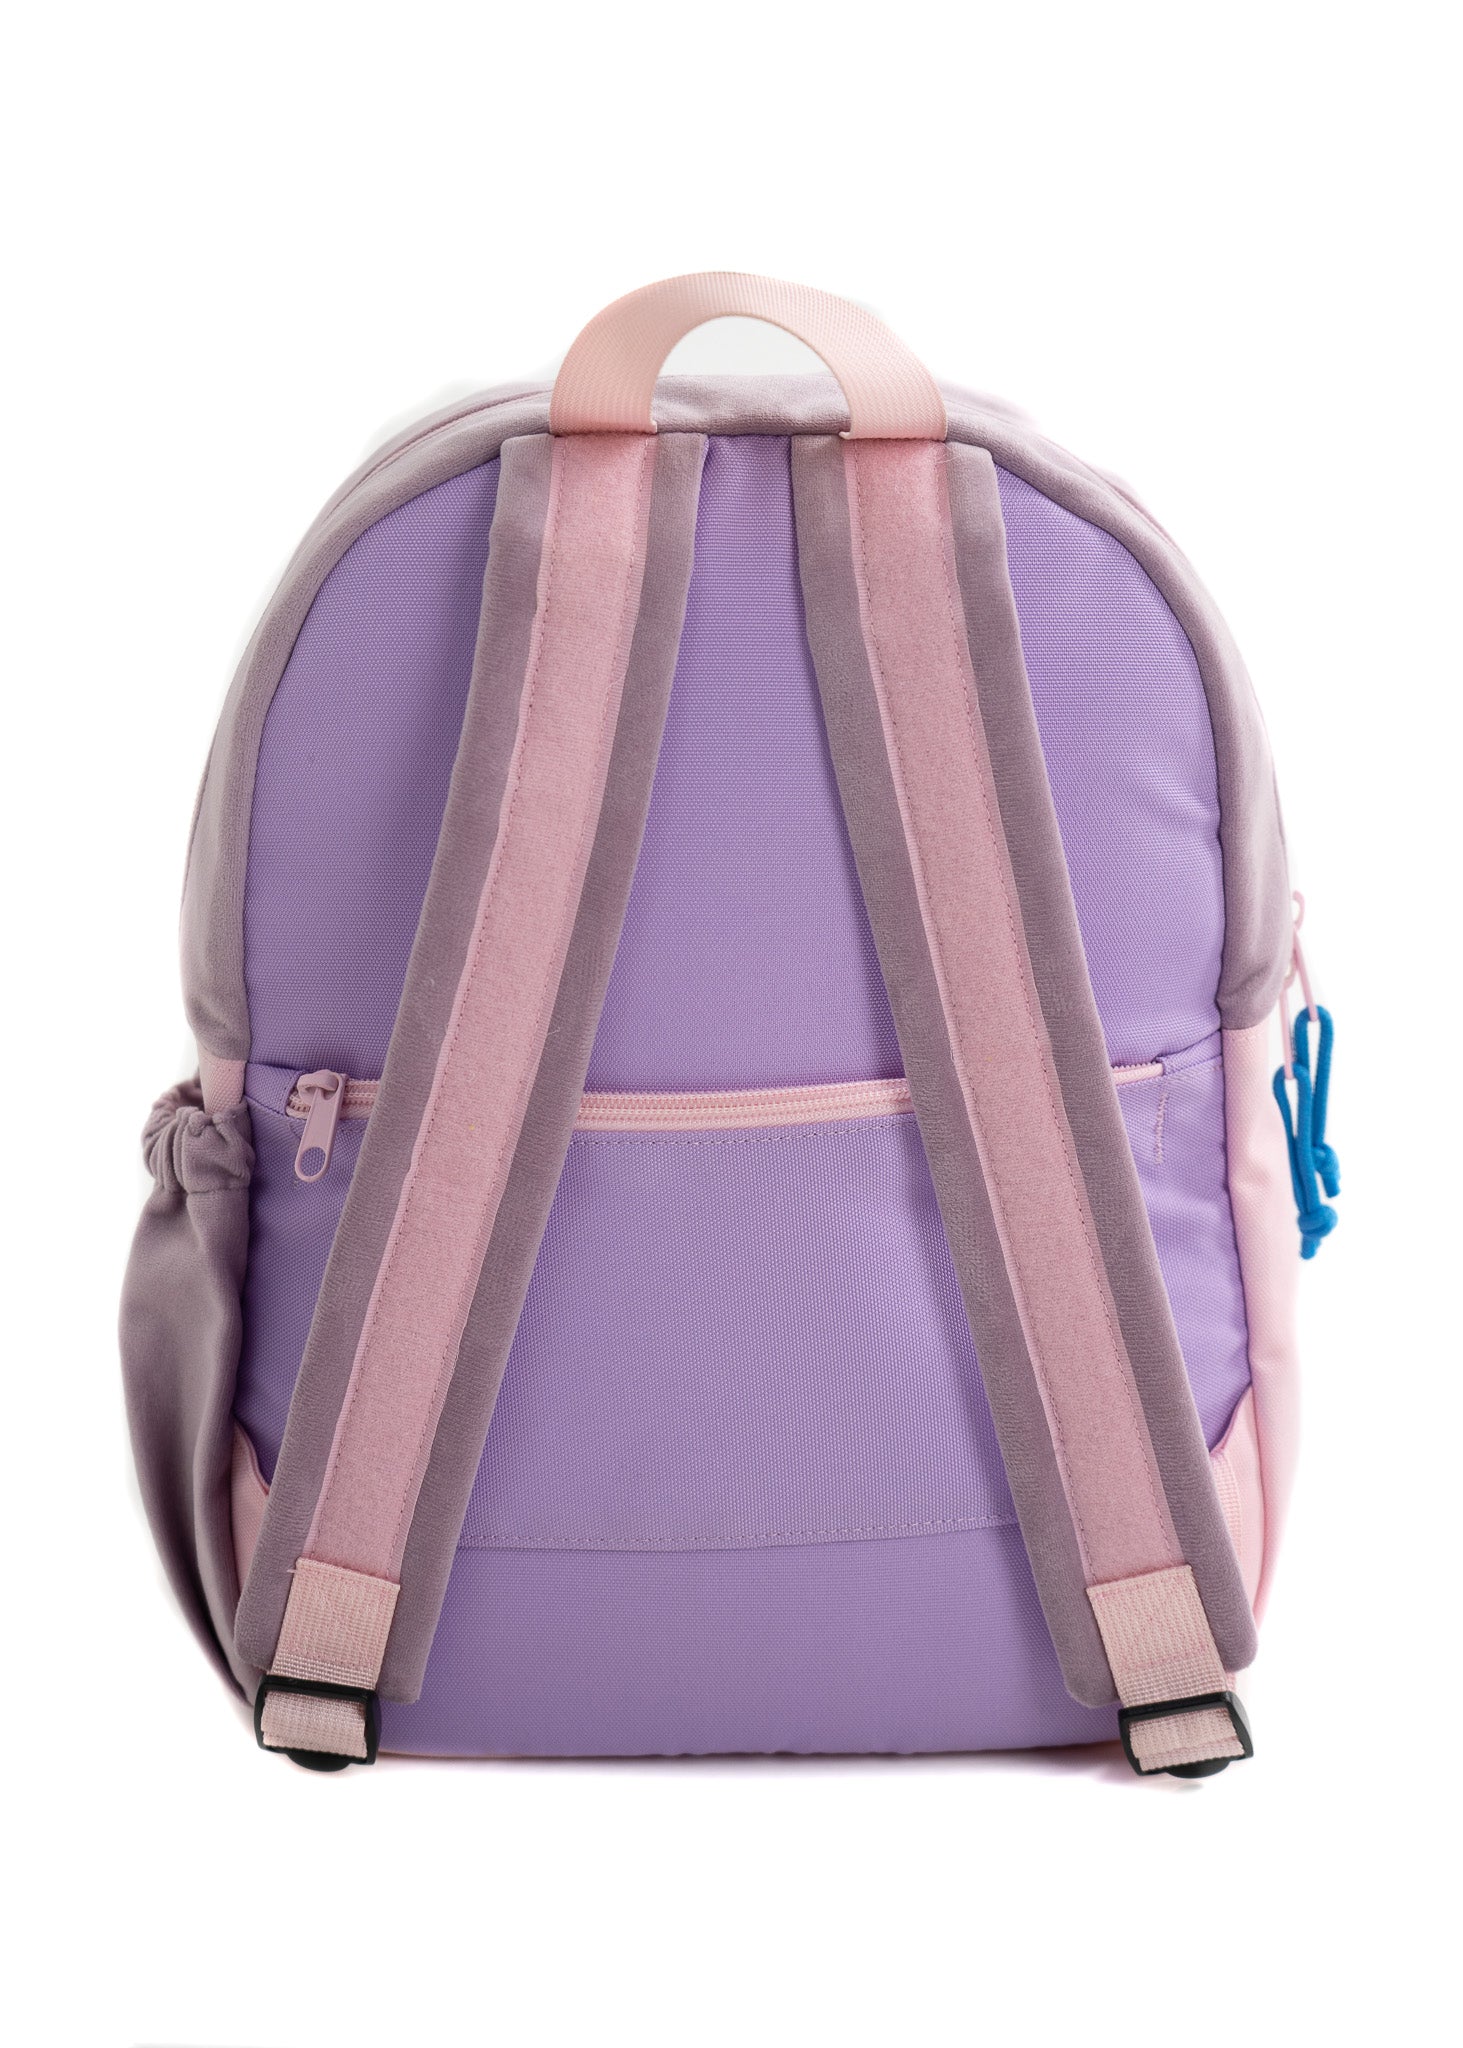 Hook & Loop Lux Kids Backpack - Pink / Lavender